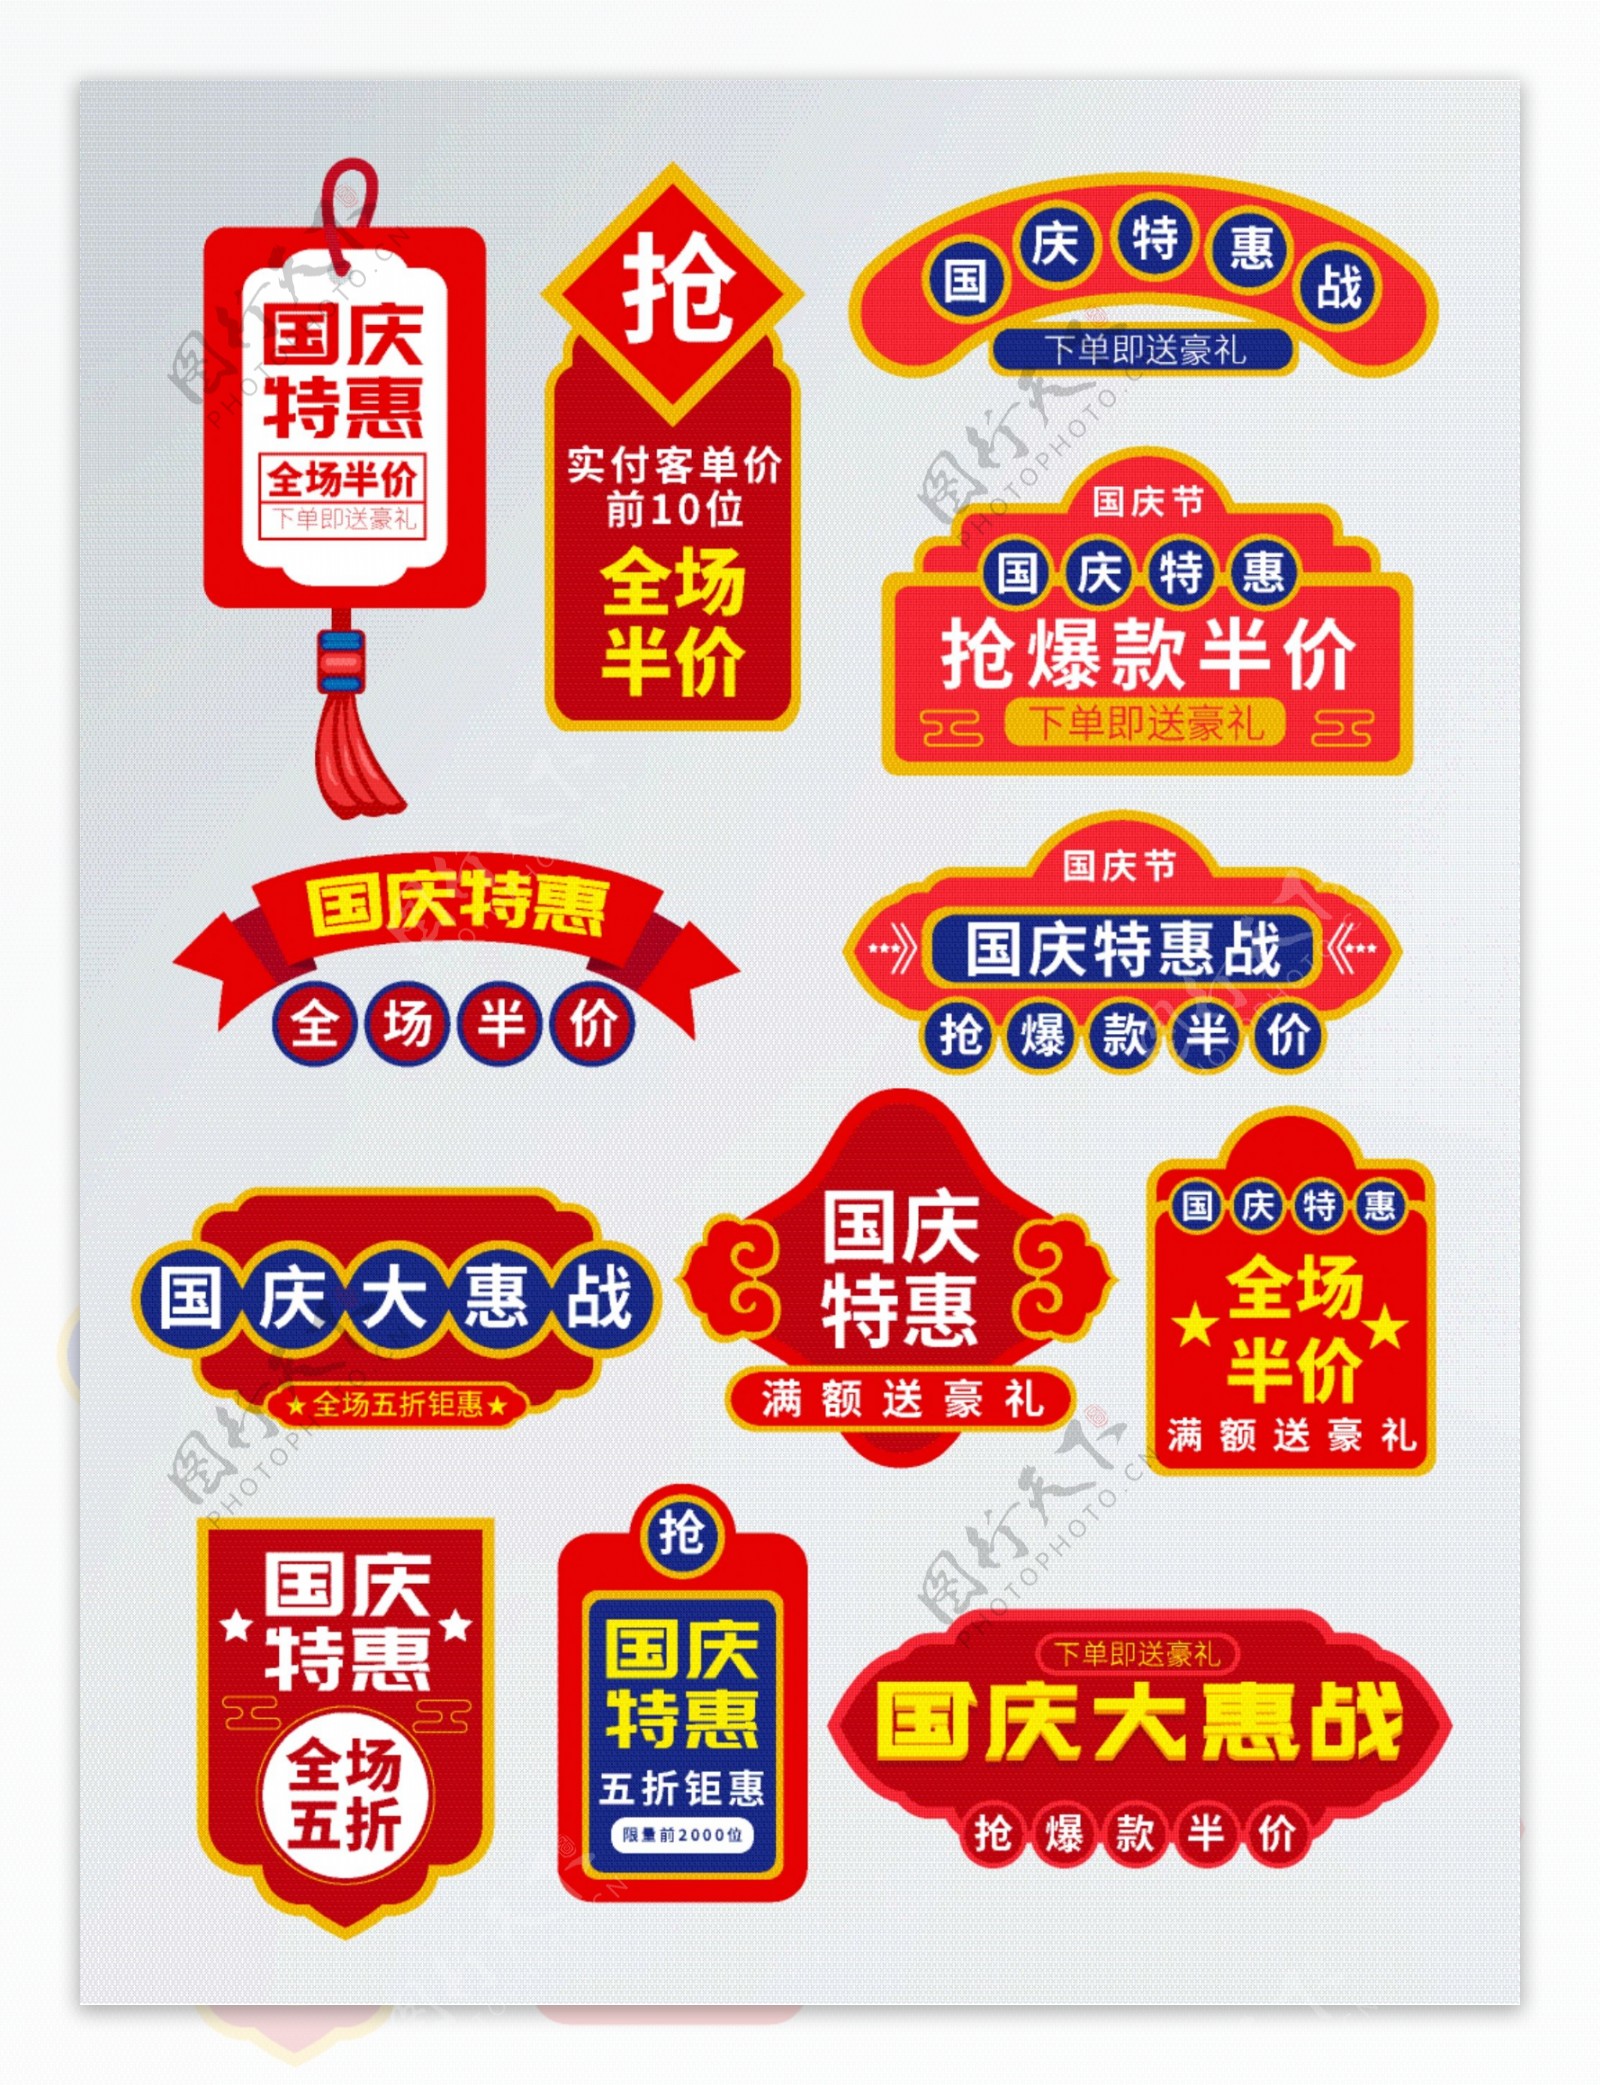 红色中国风国庆节特惠活动促销标签